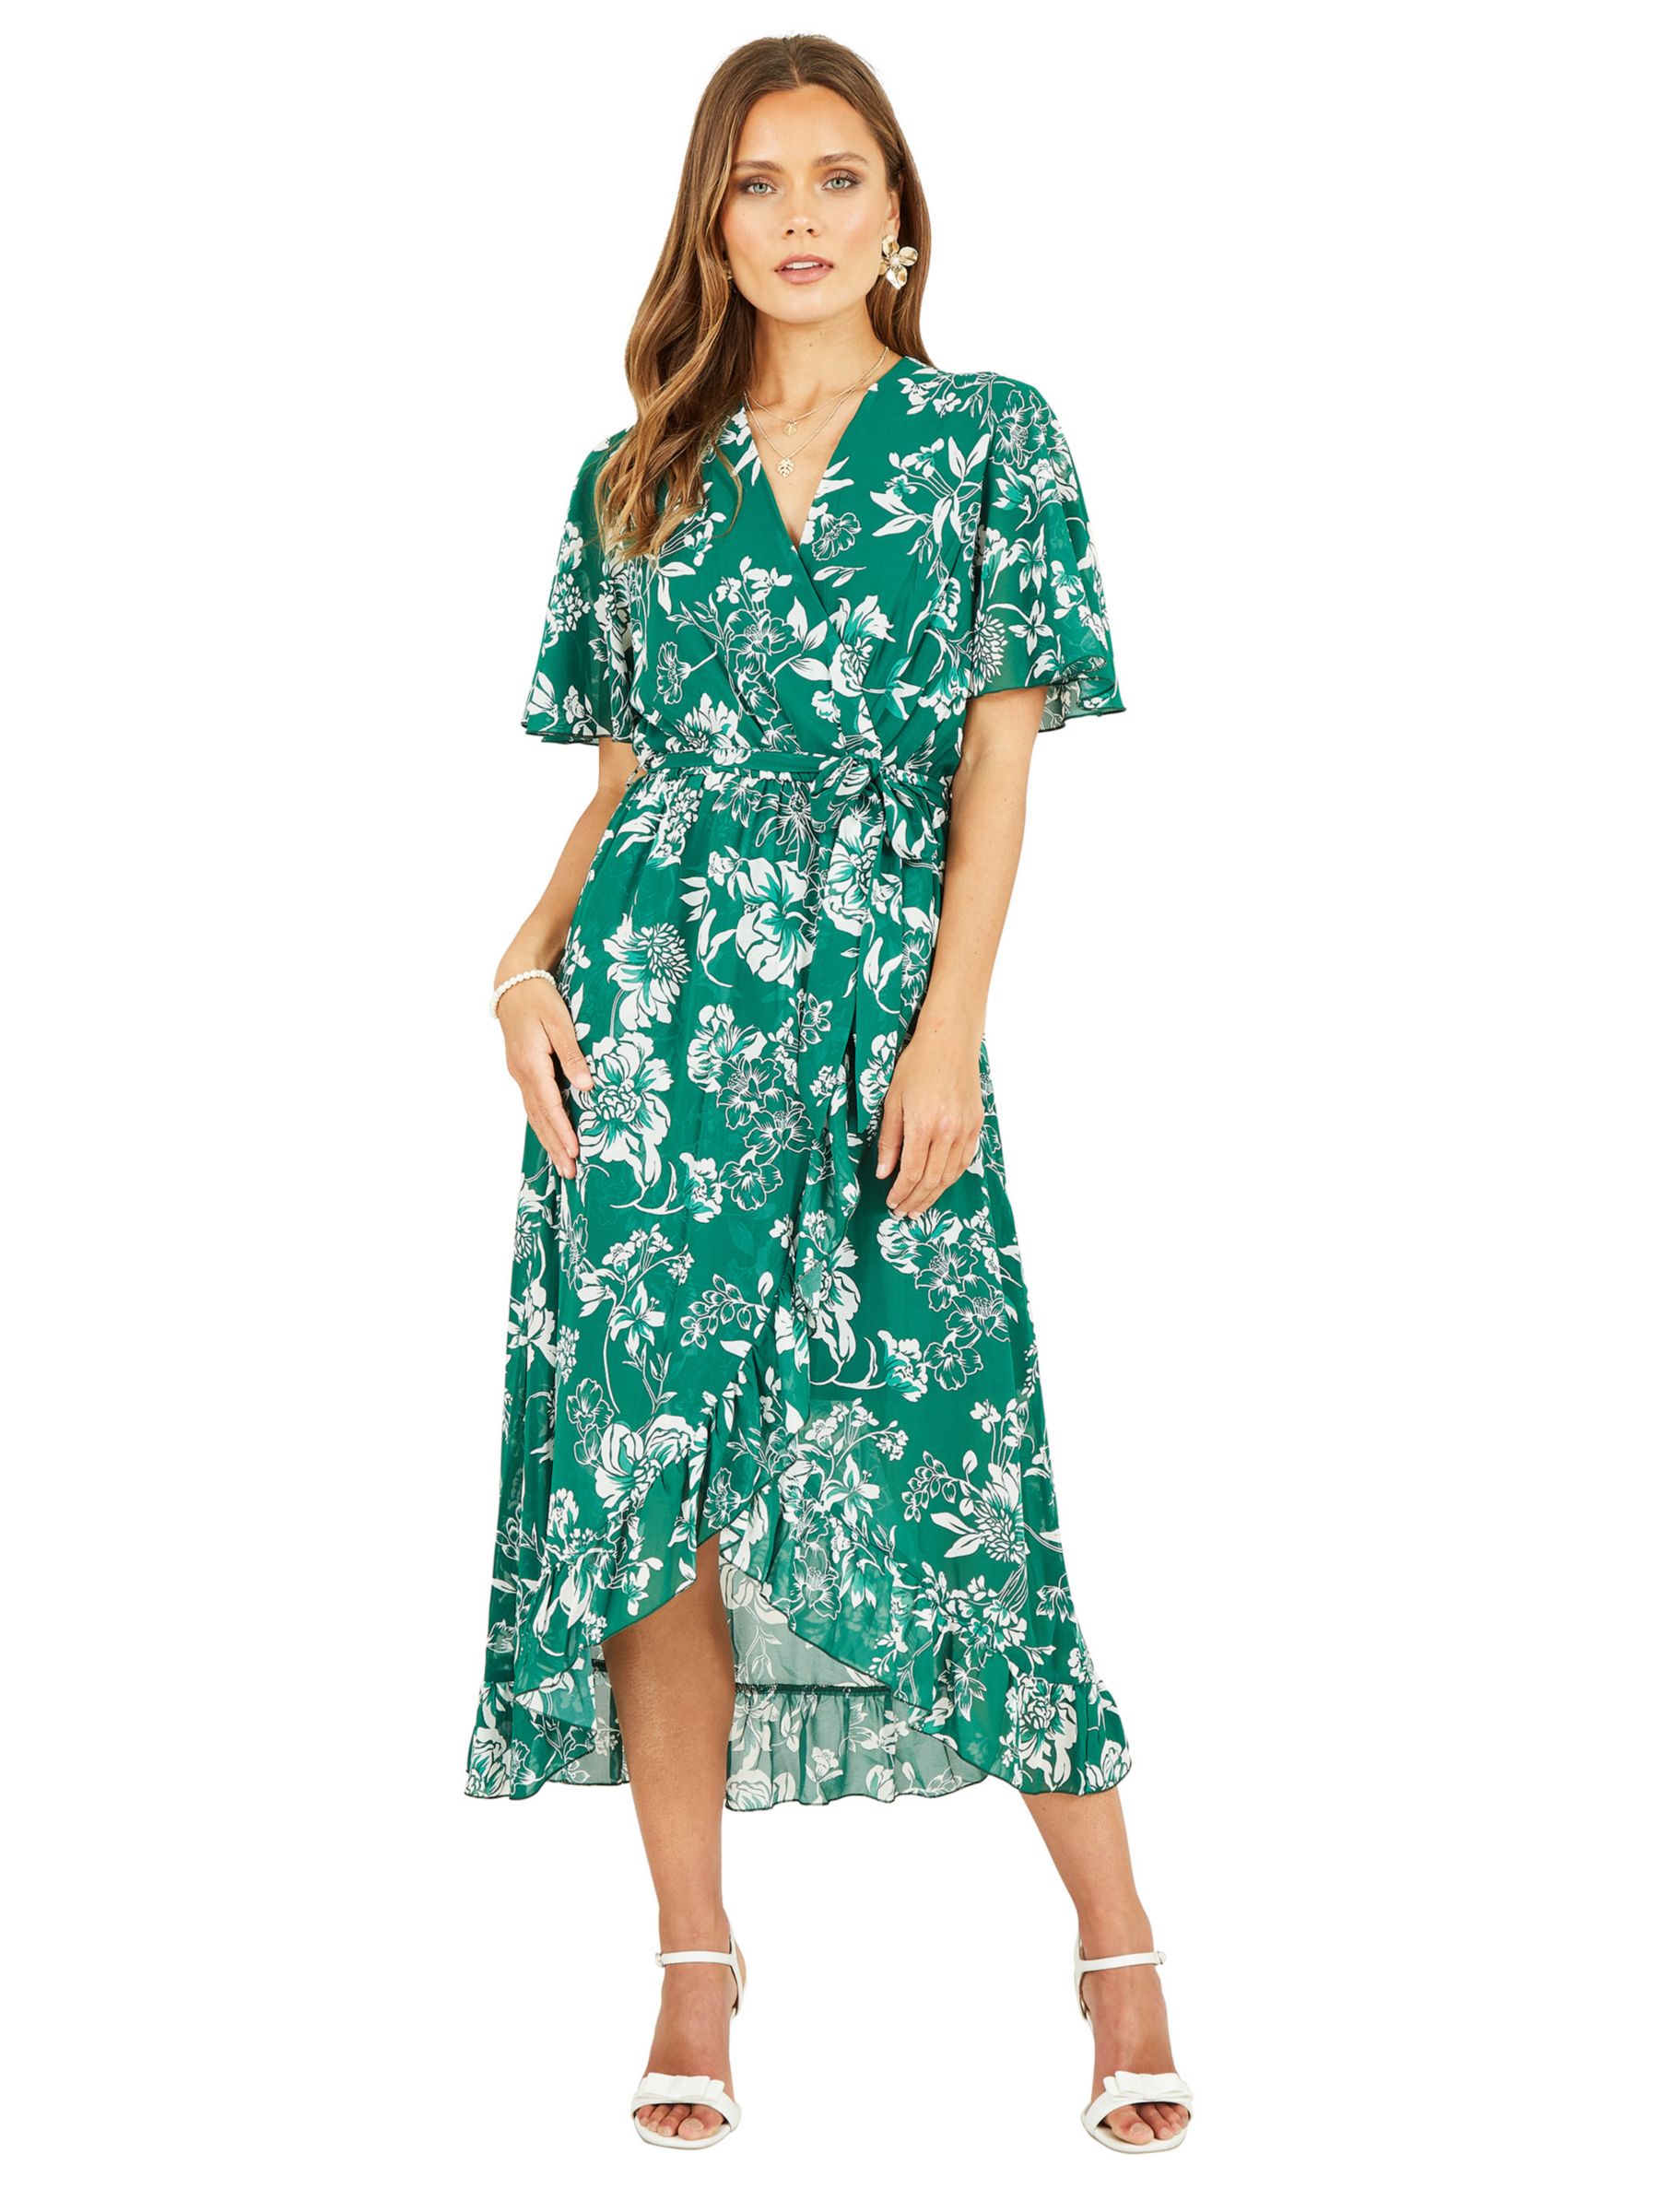 Mela London Floral Print Wrap Midi Dress, Green, 8